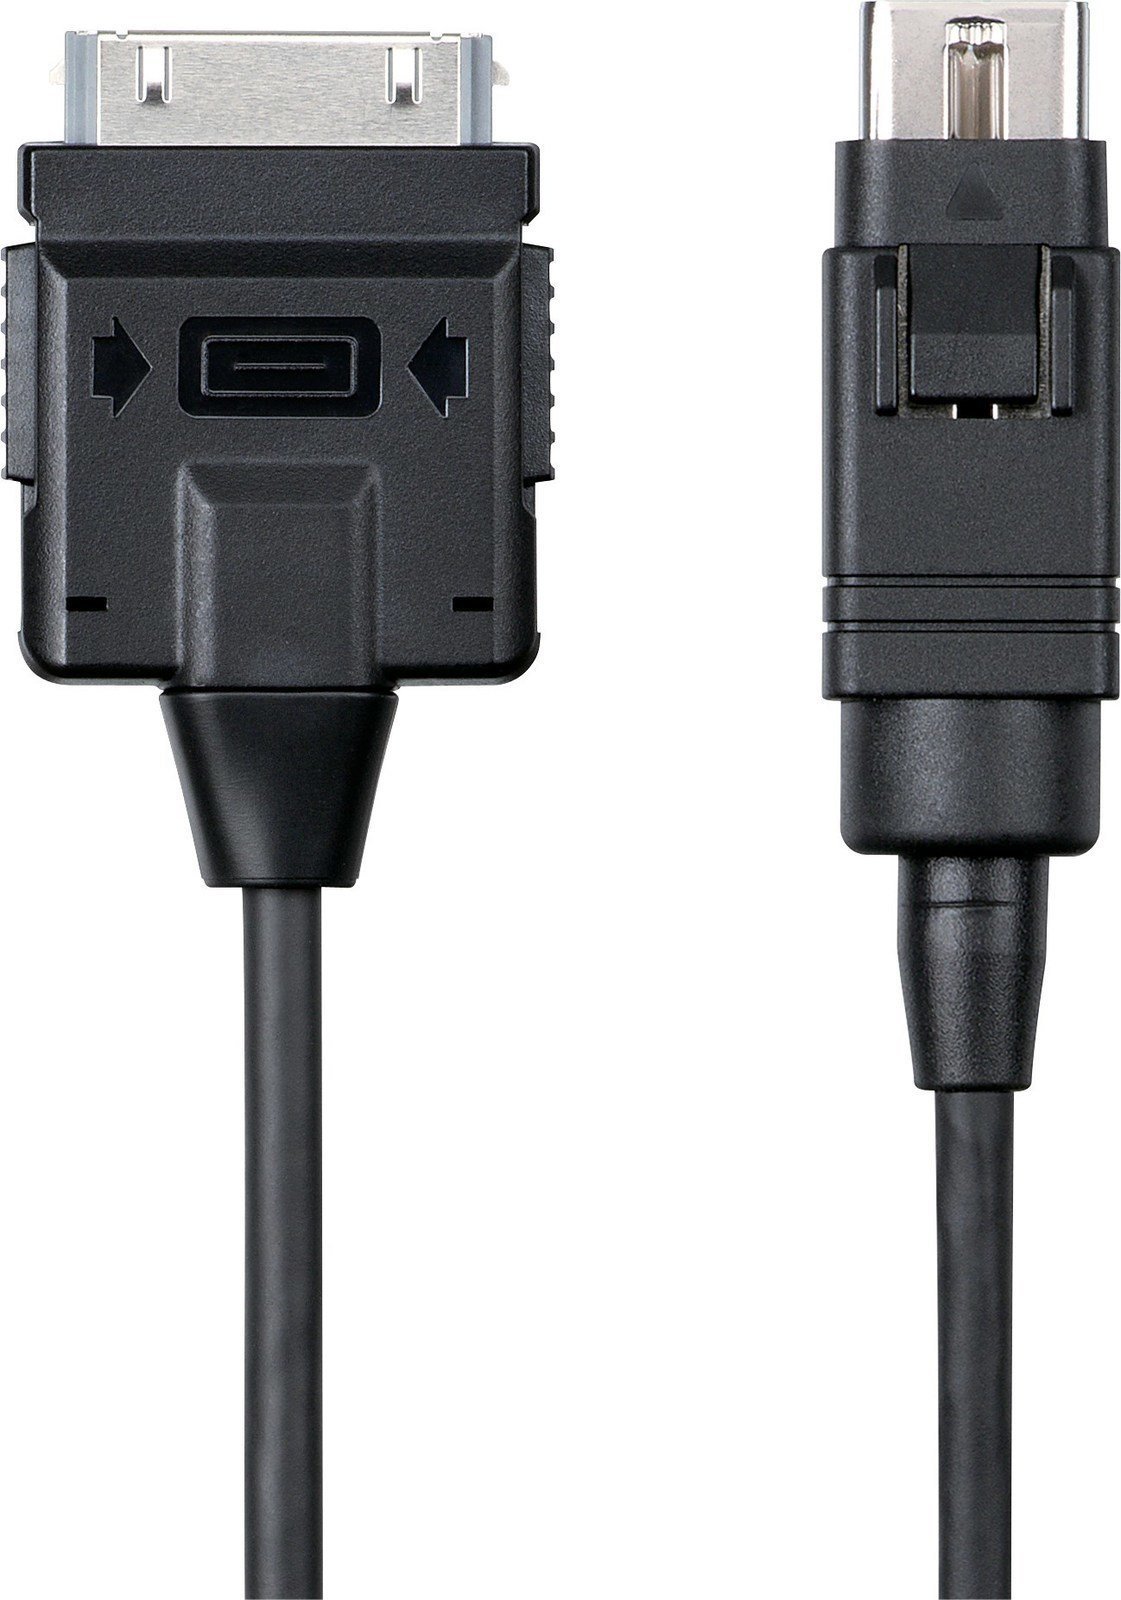 USB Kabel Pioneer Dj DDJ-WECAI30 Schwarz 50 cm USB Kabel